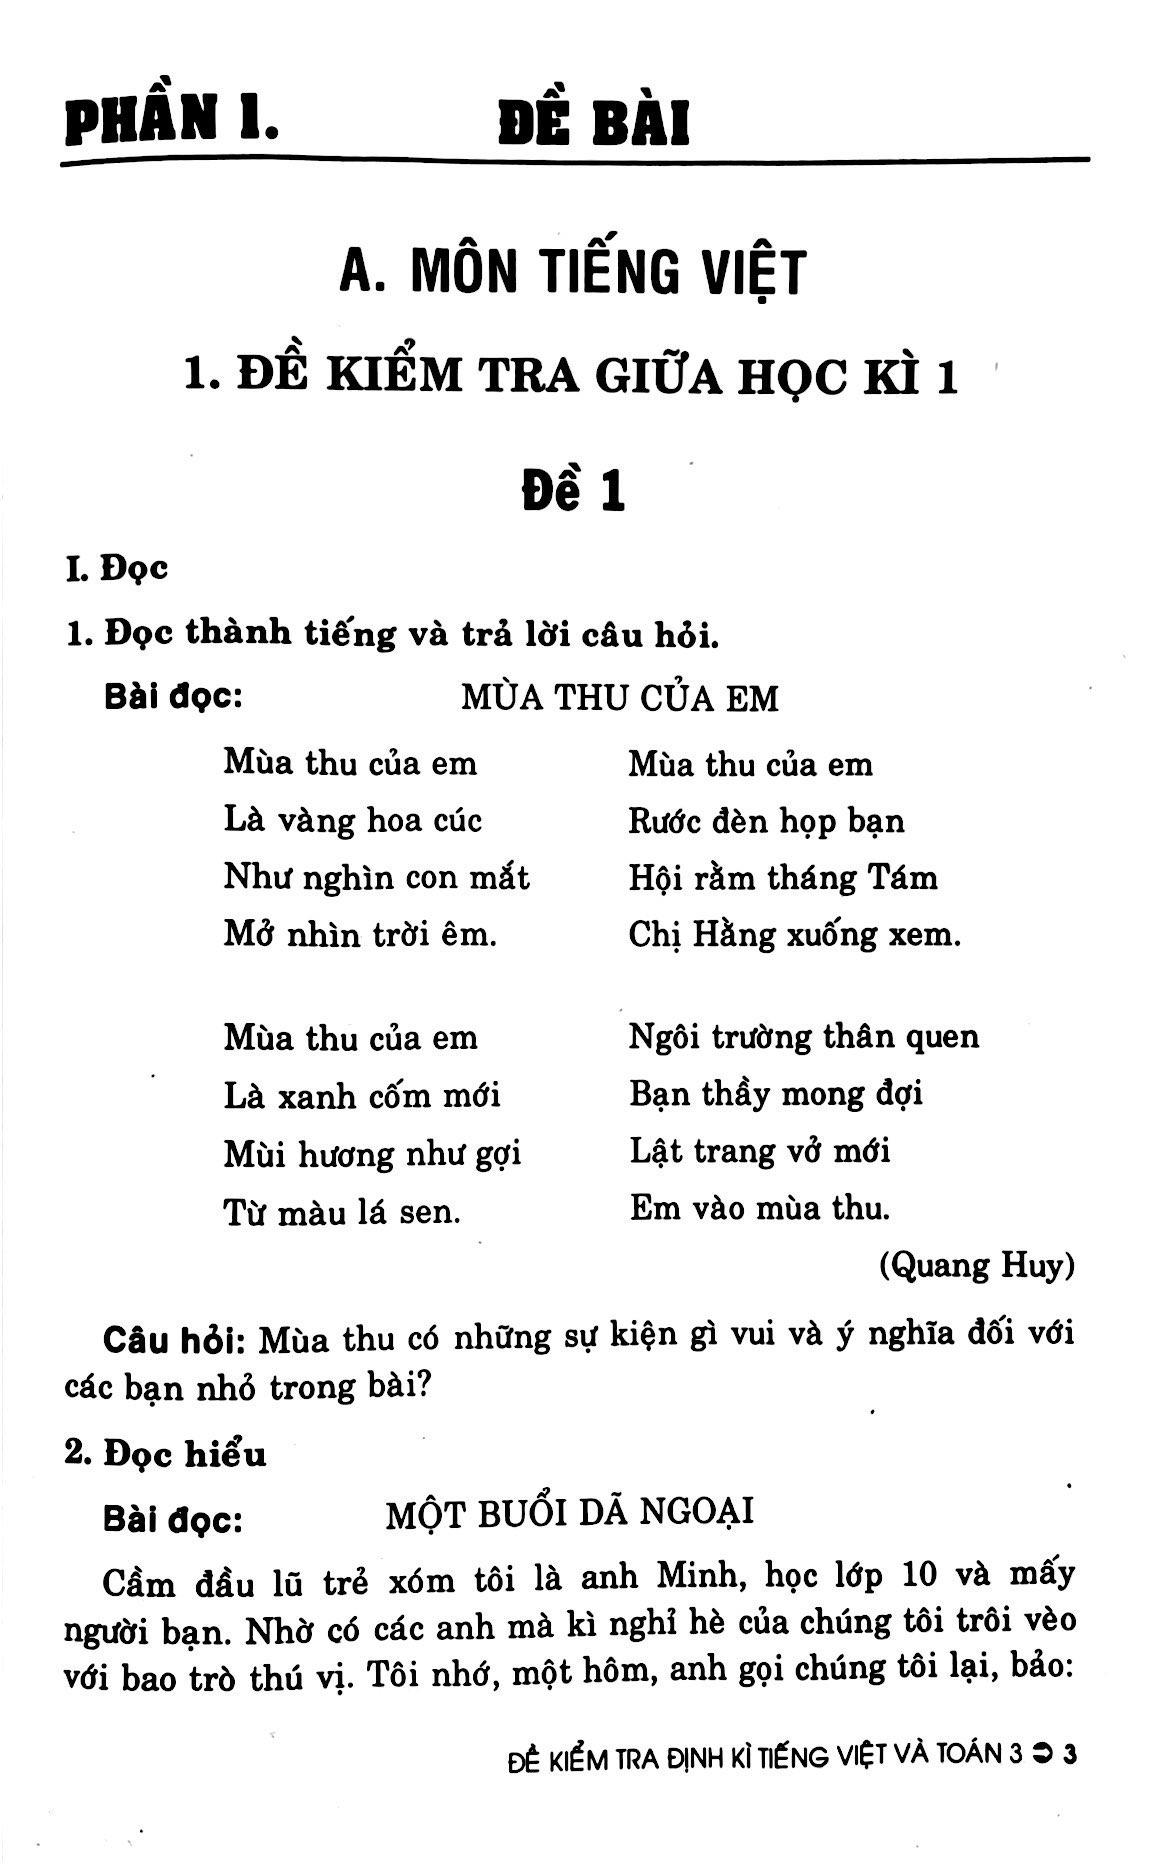 Đề Kiểm Tra Định Kì Tiếng Việt Và Toán 3 (Theo Chương Trình Giáo Dục Phổ Thông Mới - Dùng Chung Cho Các Bộ SGK Hiện Hành)